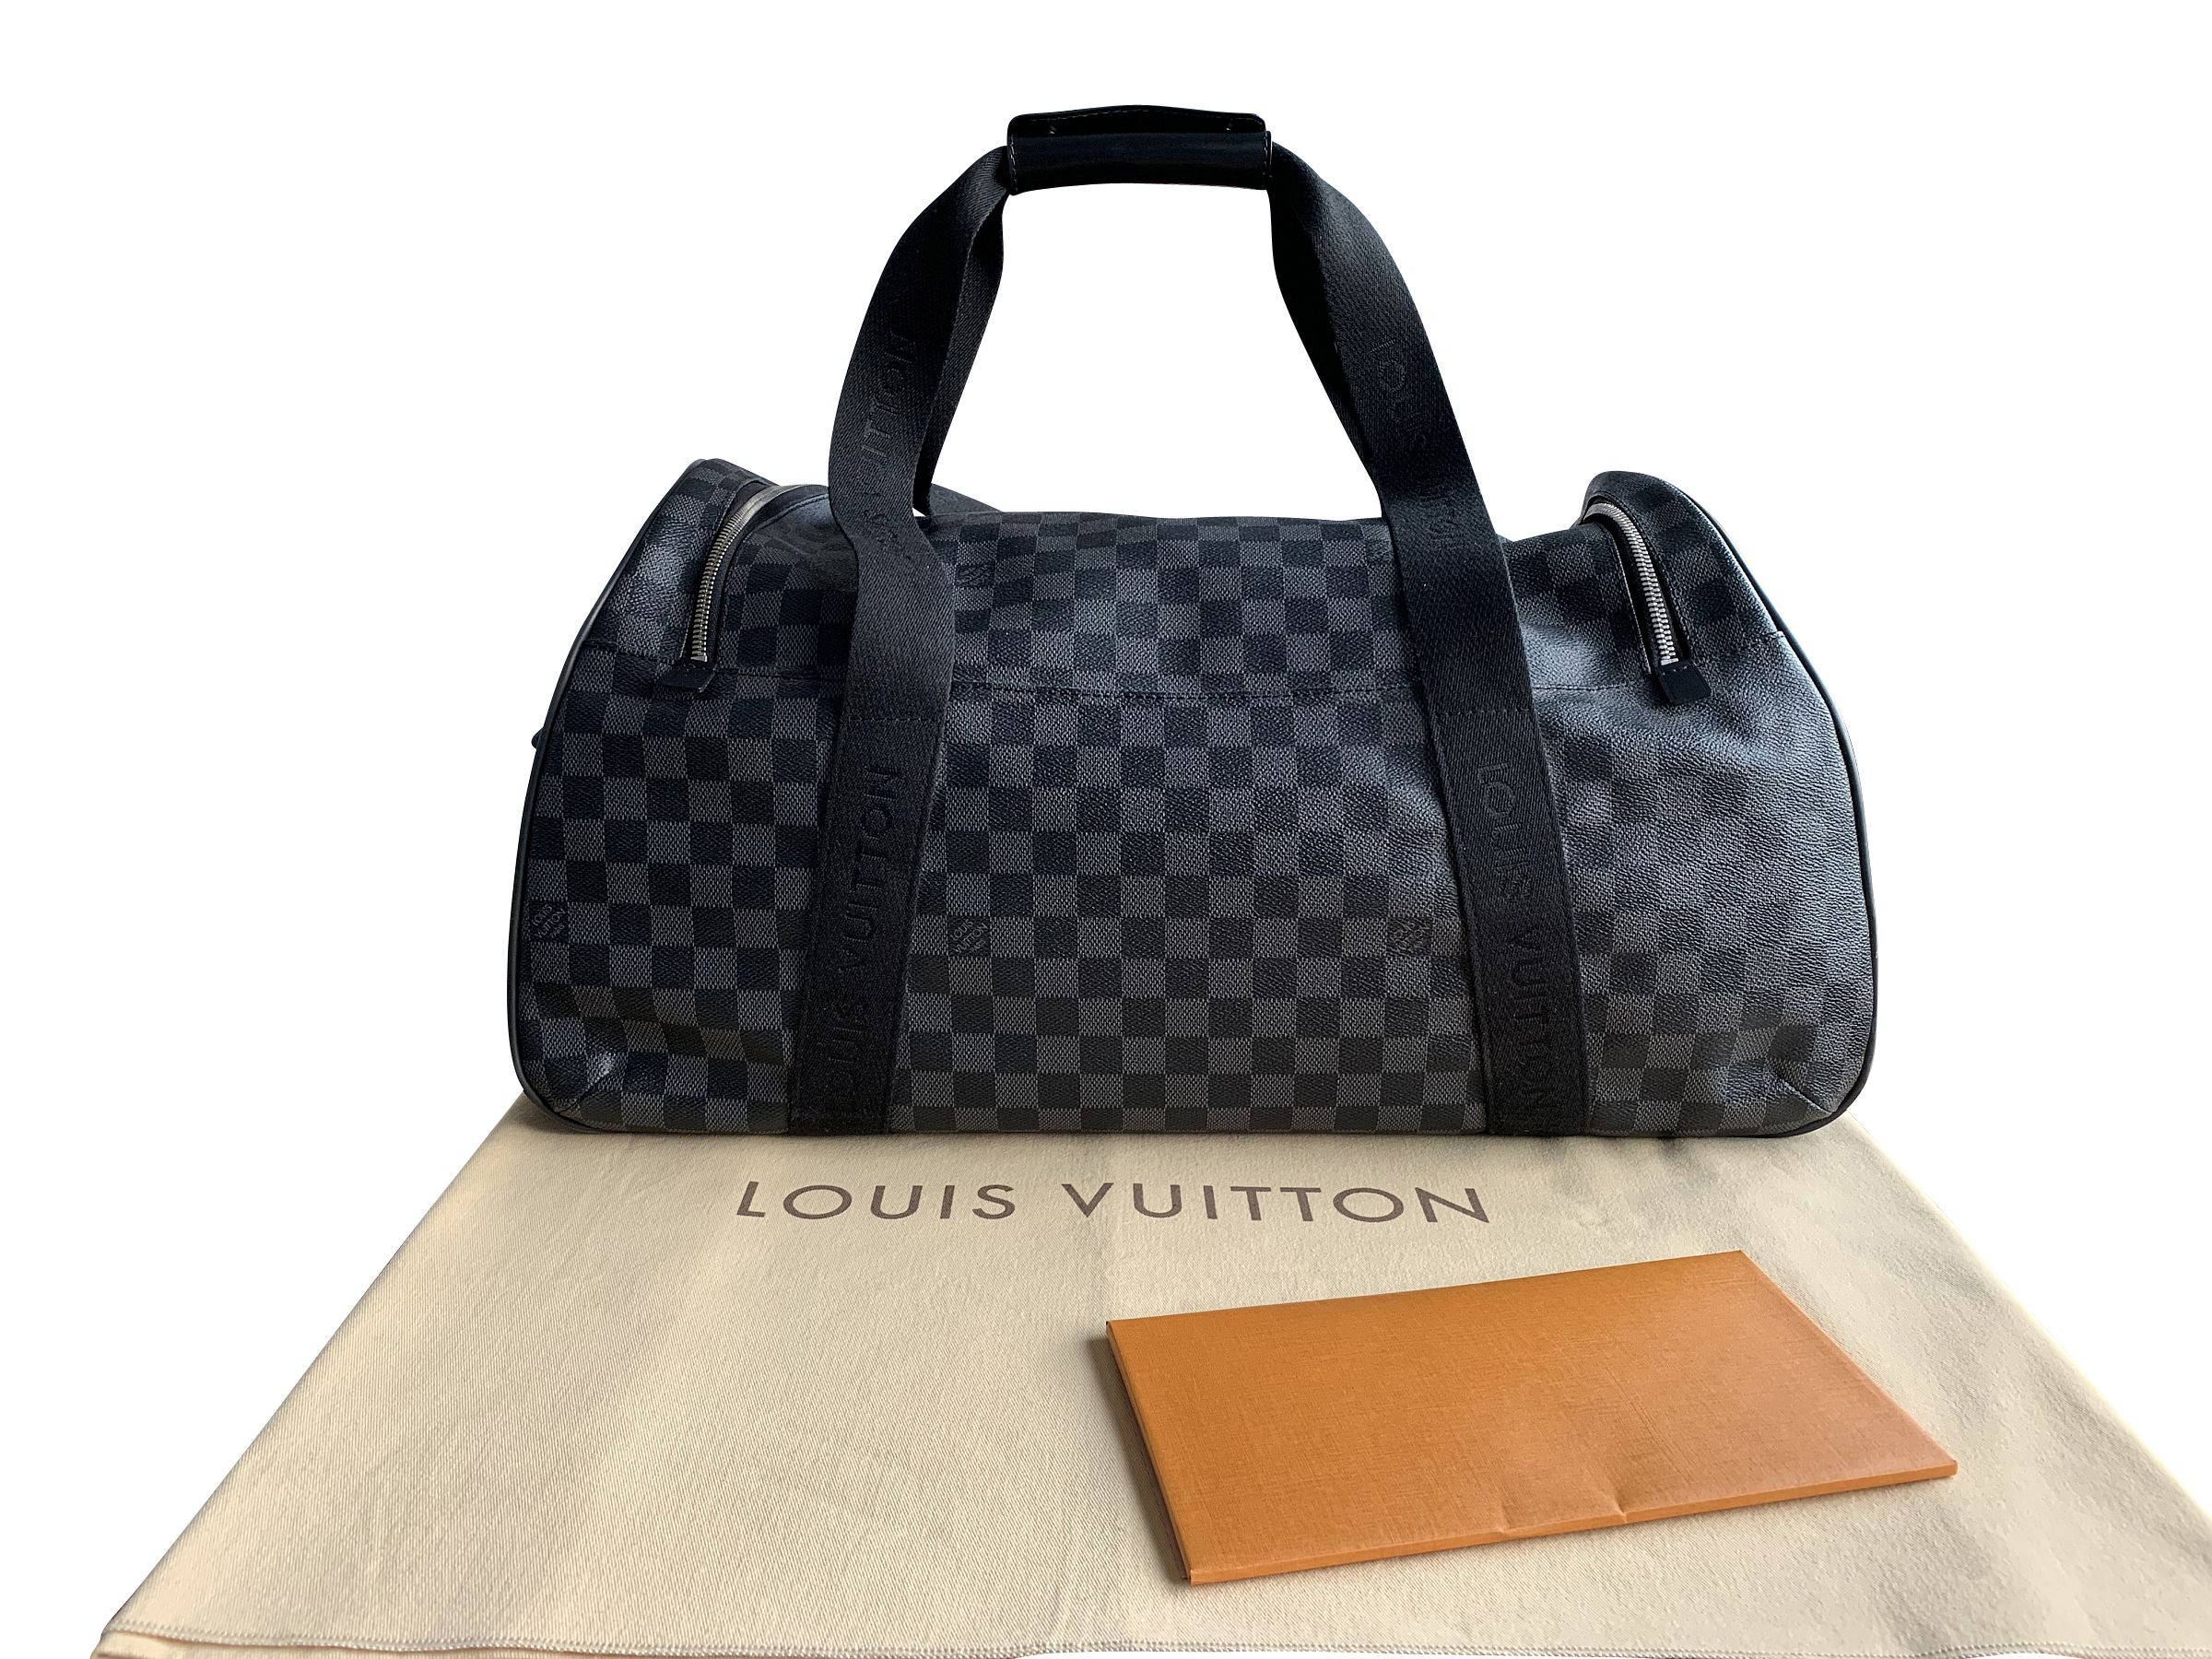 VERKAUFT - Louis Vuitton * N23000 * Neo Eole 55 Damier Graphite